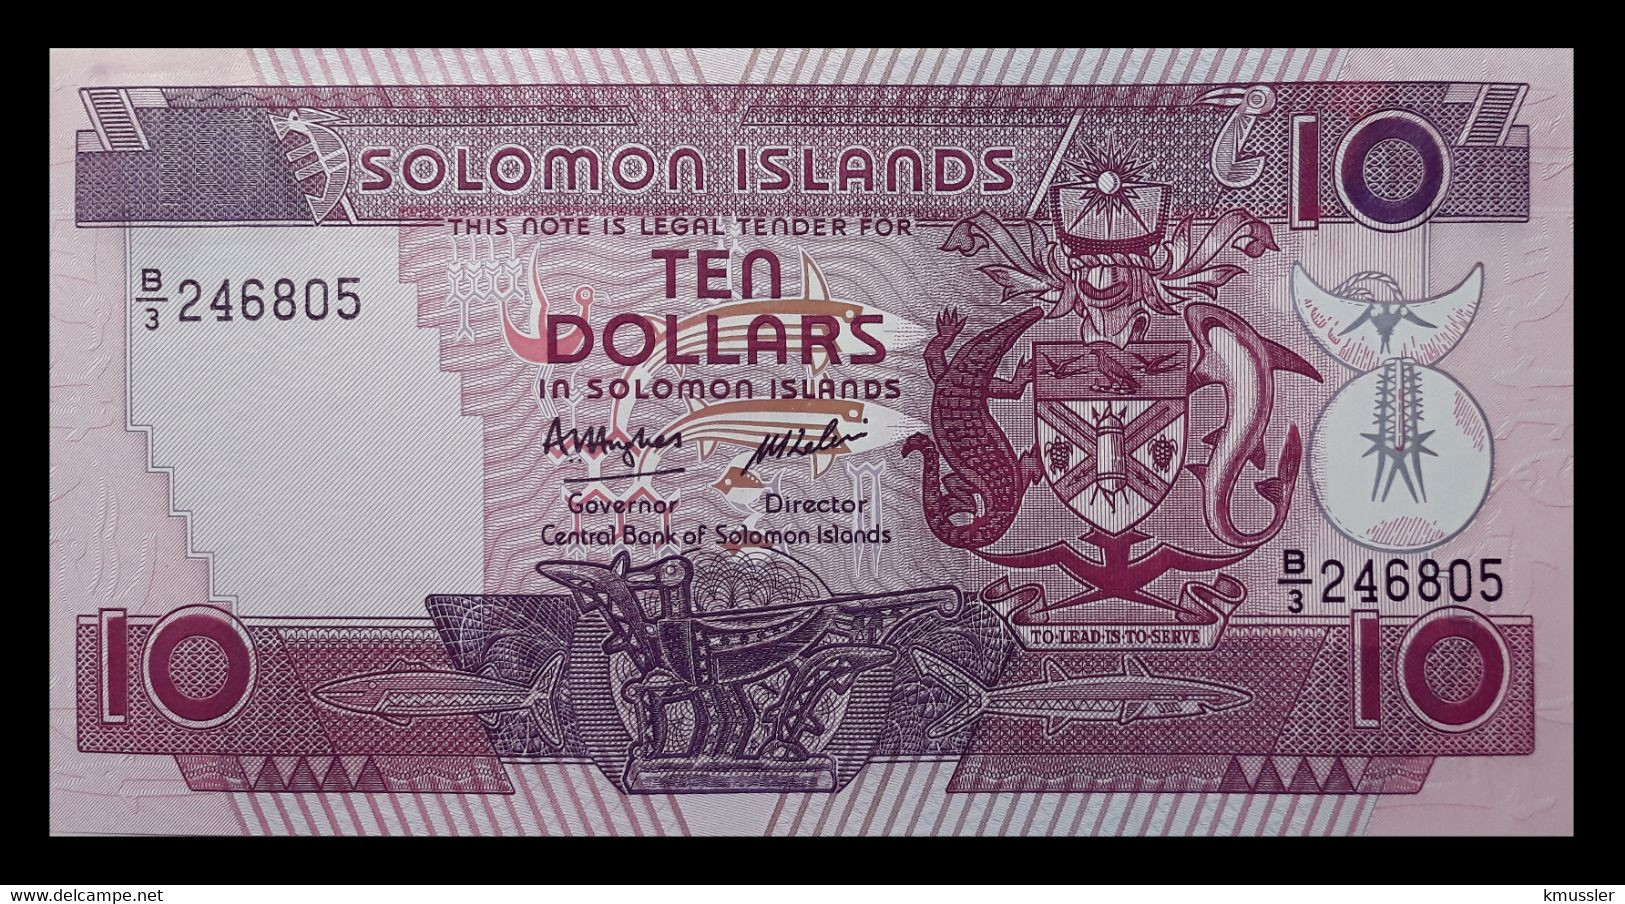 # # # Banknote Von Den Solomon-Inseln 10 Dollars UNC # # # - Isla Salomon